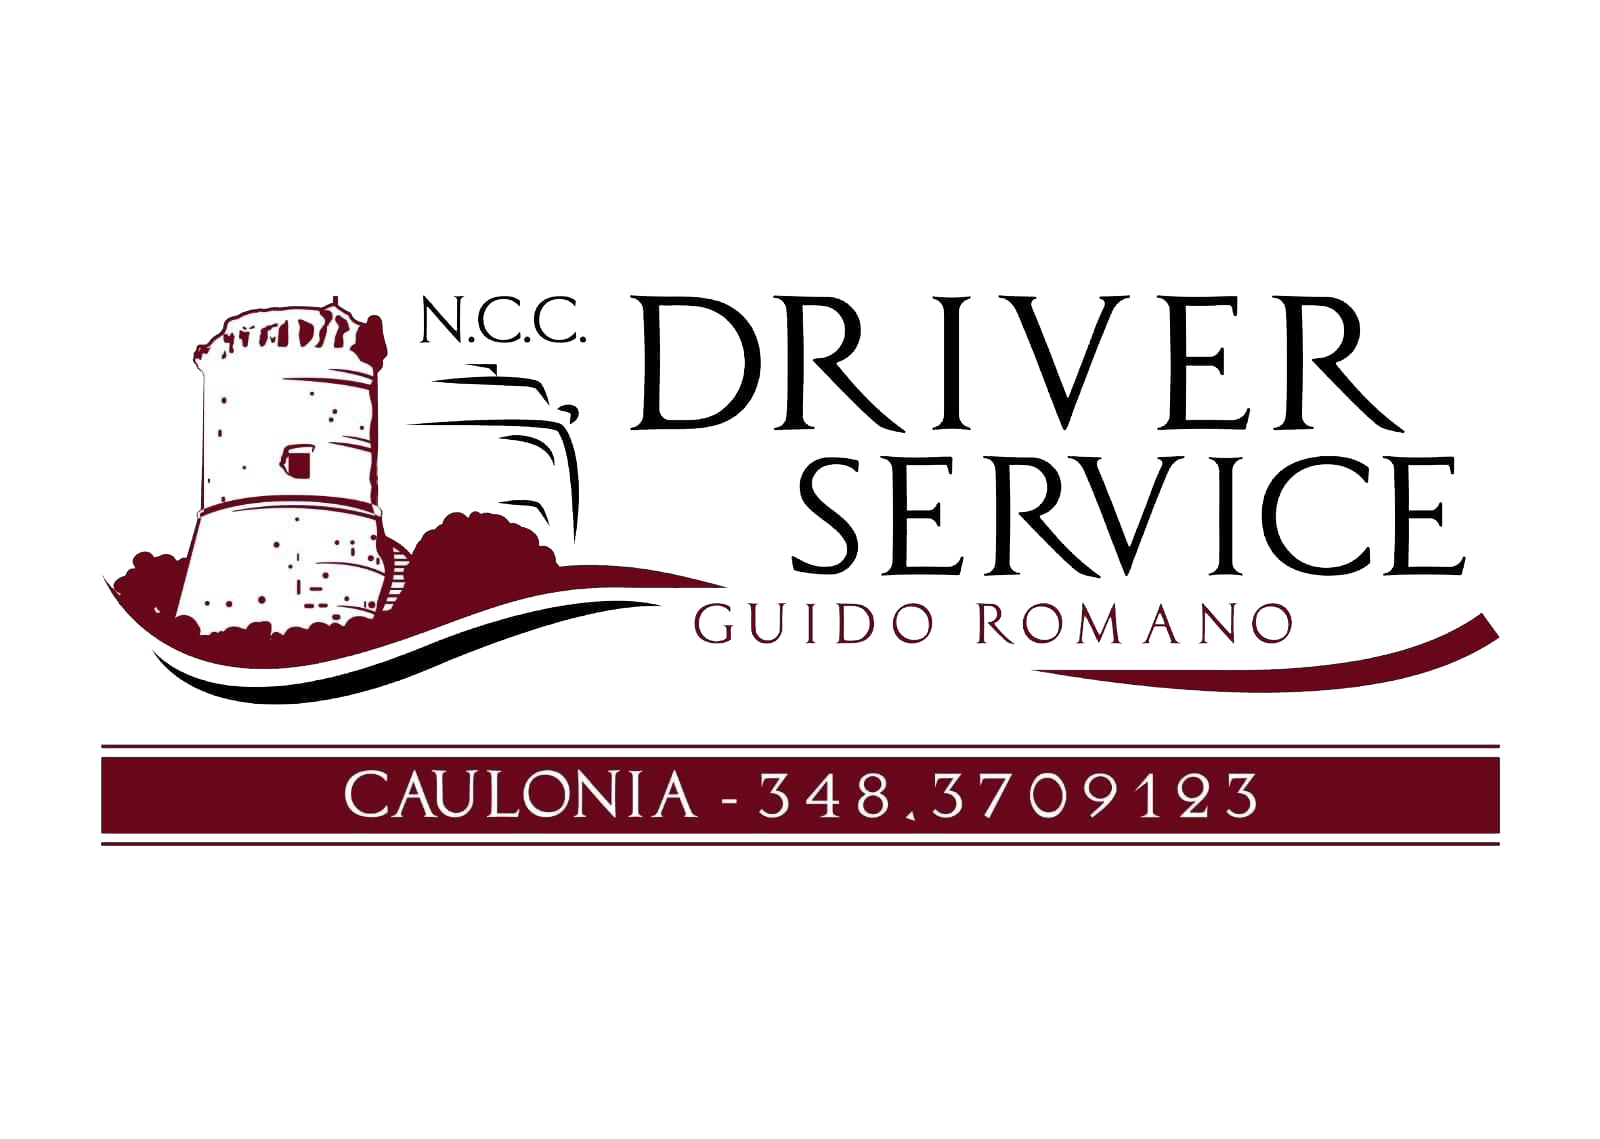 Driver Service N.C.C. di Guido Romano